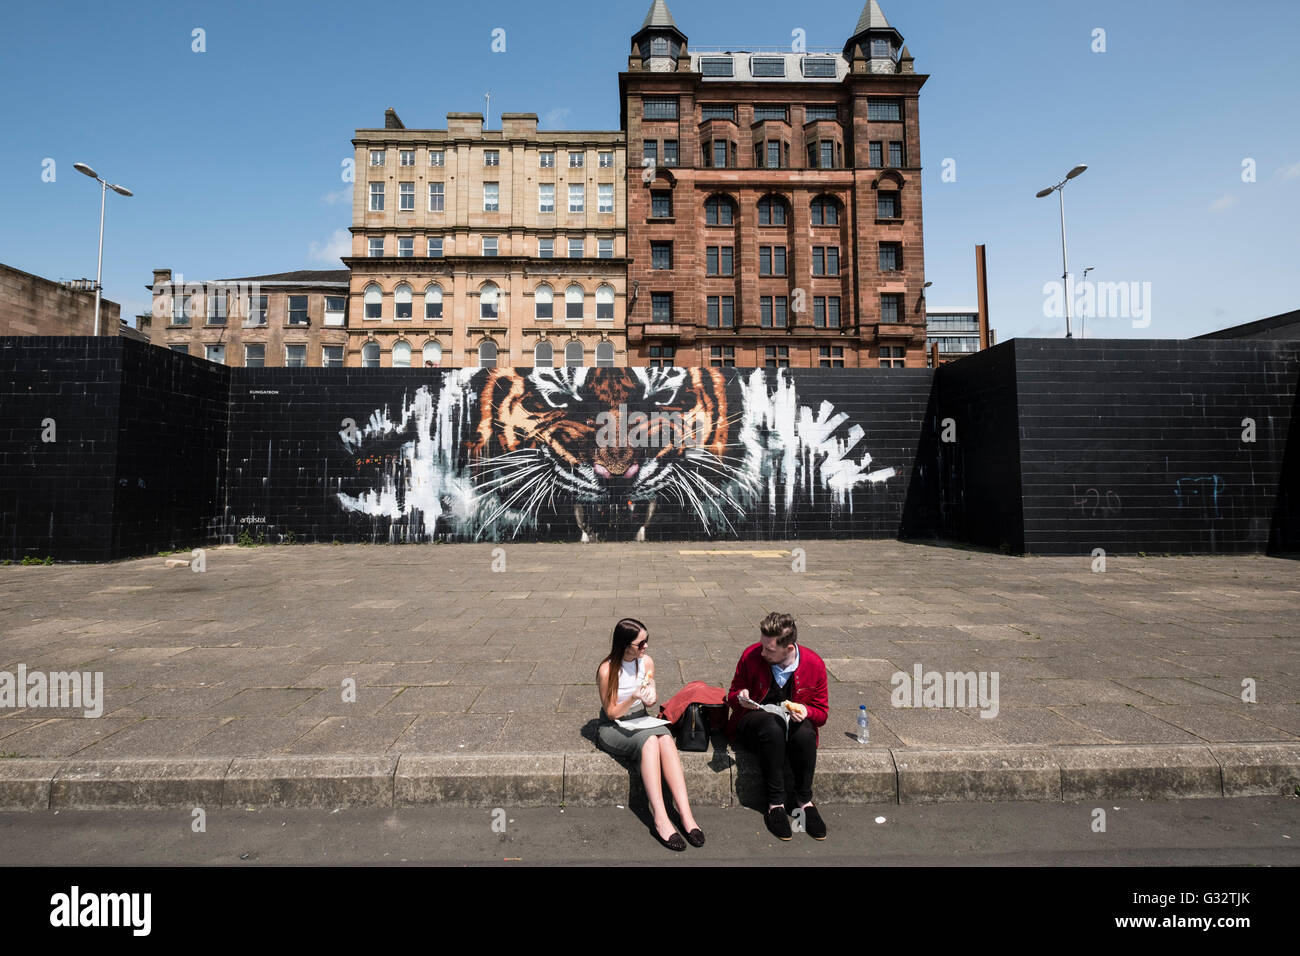 Tiger street arte murale sulla parete nella zona centrale di Glasgow, Scozia , Regno Unito Foto Stock